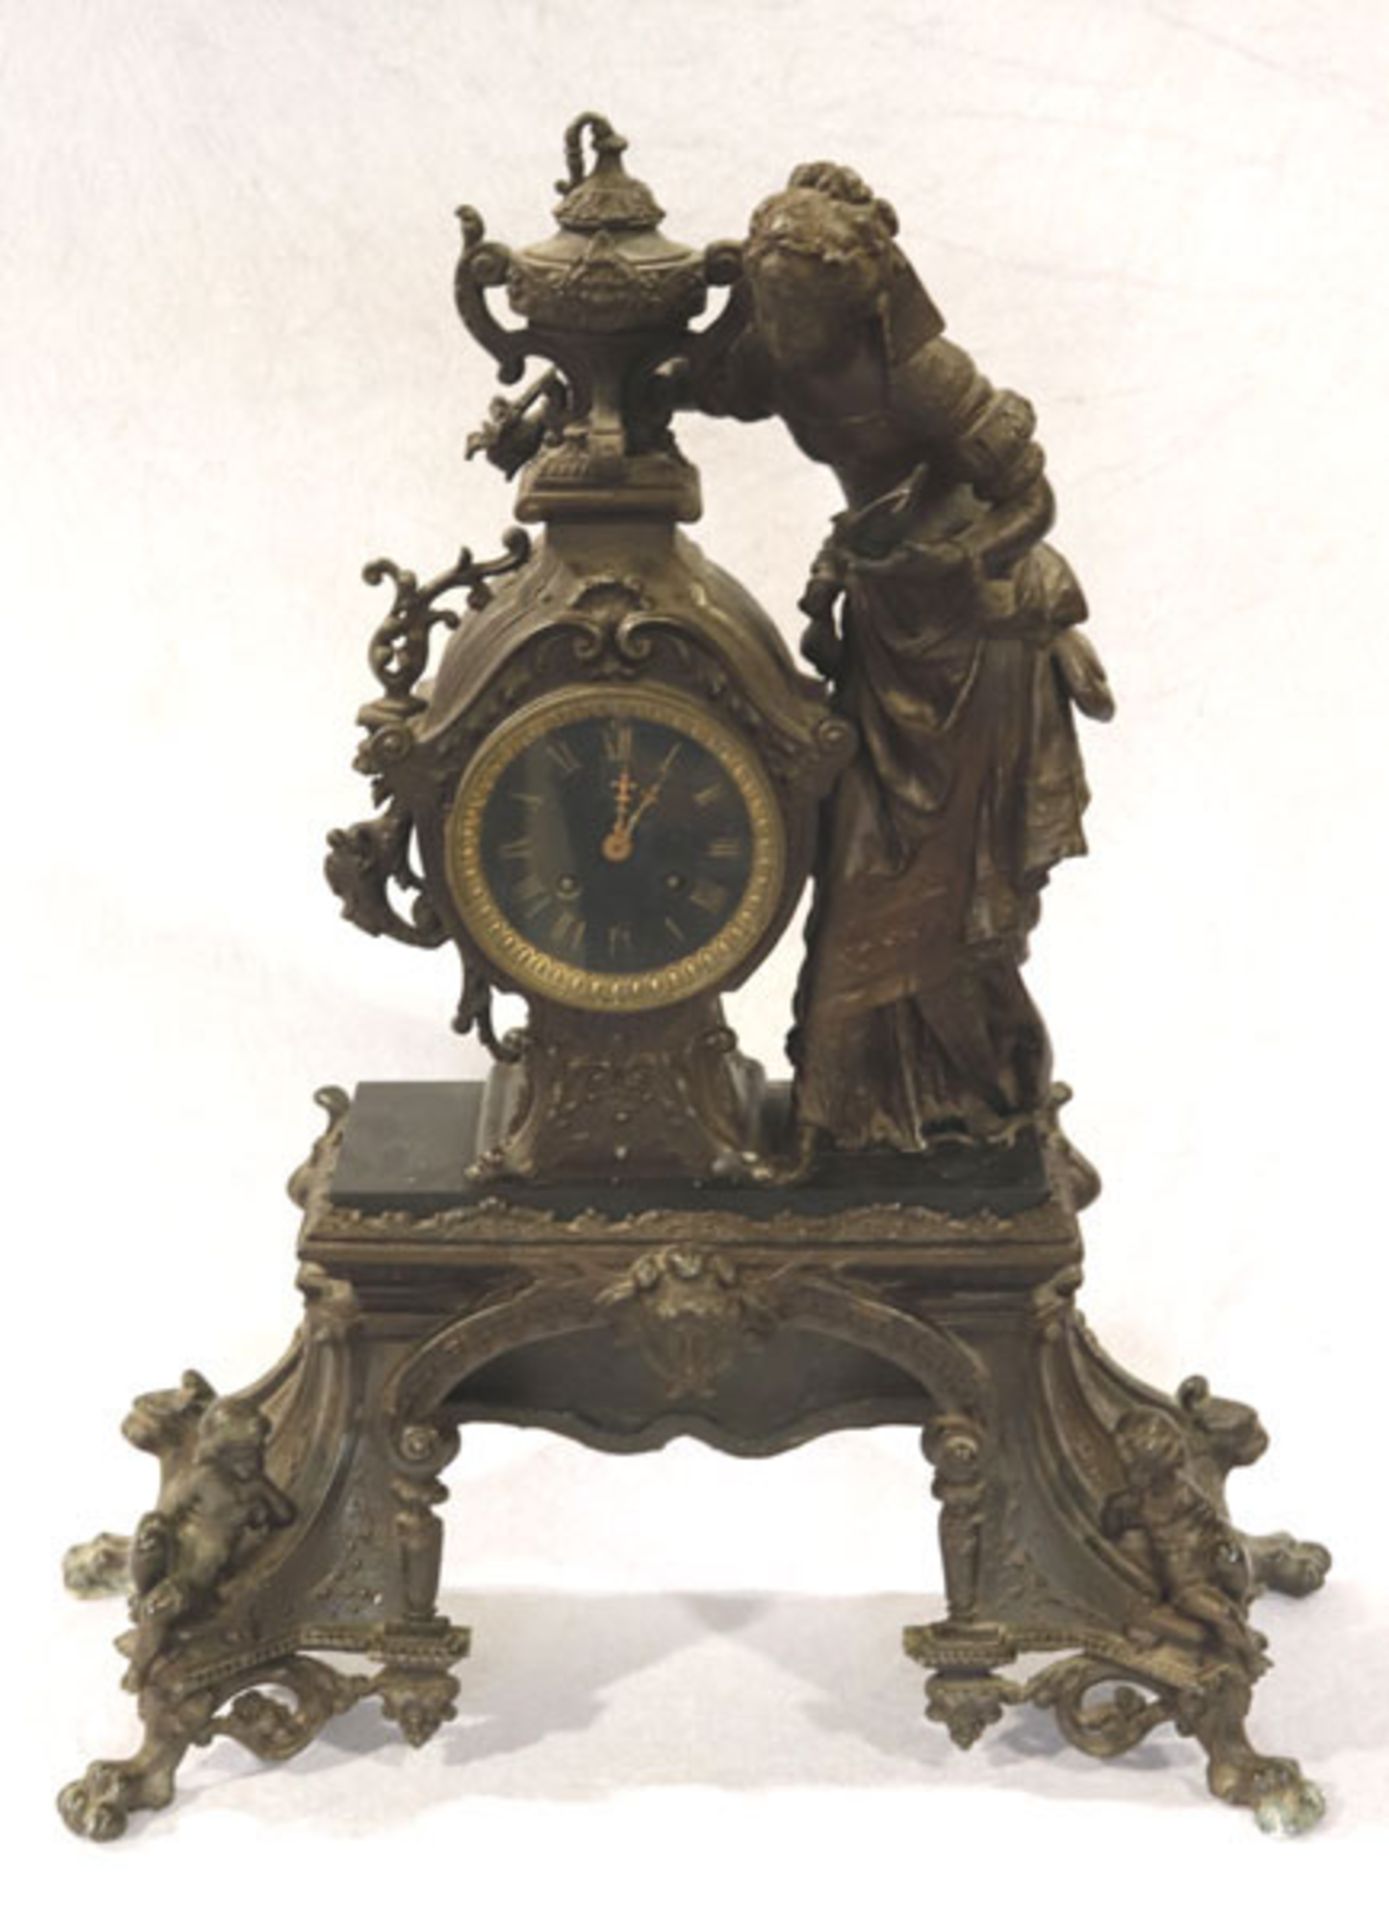 Metall Kaminuhr um 1870/80 mit figürlicher Darstellung einer Frau mit Taube und Pokal, 2